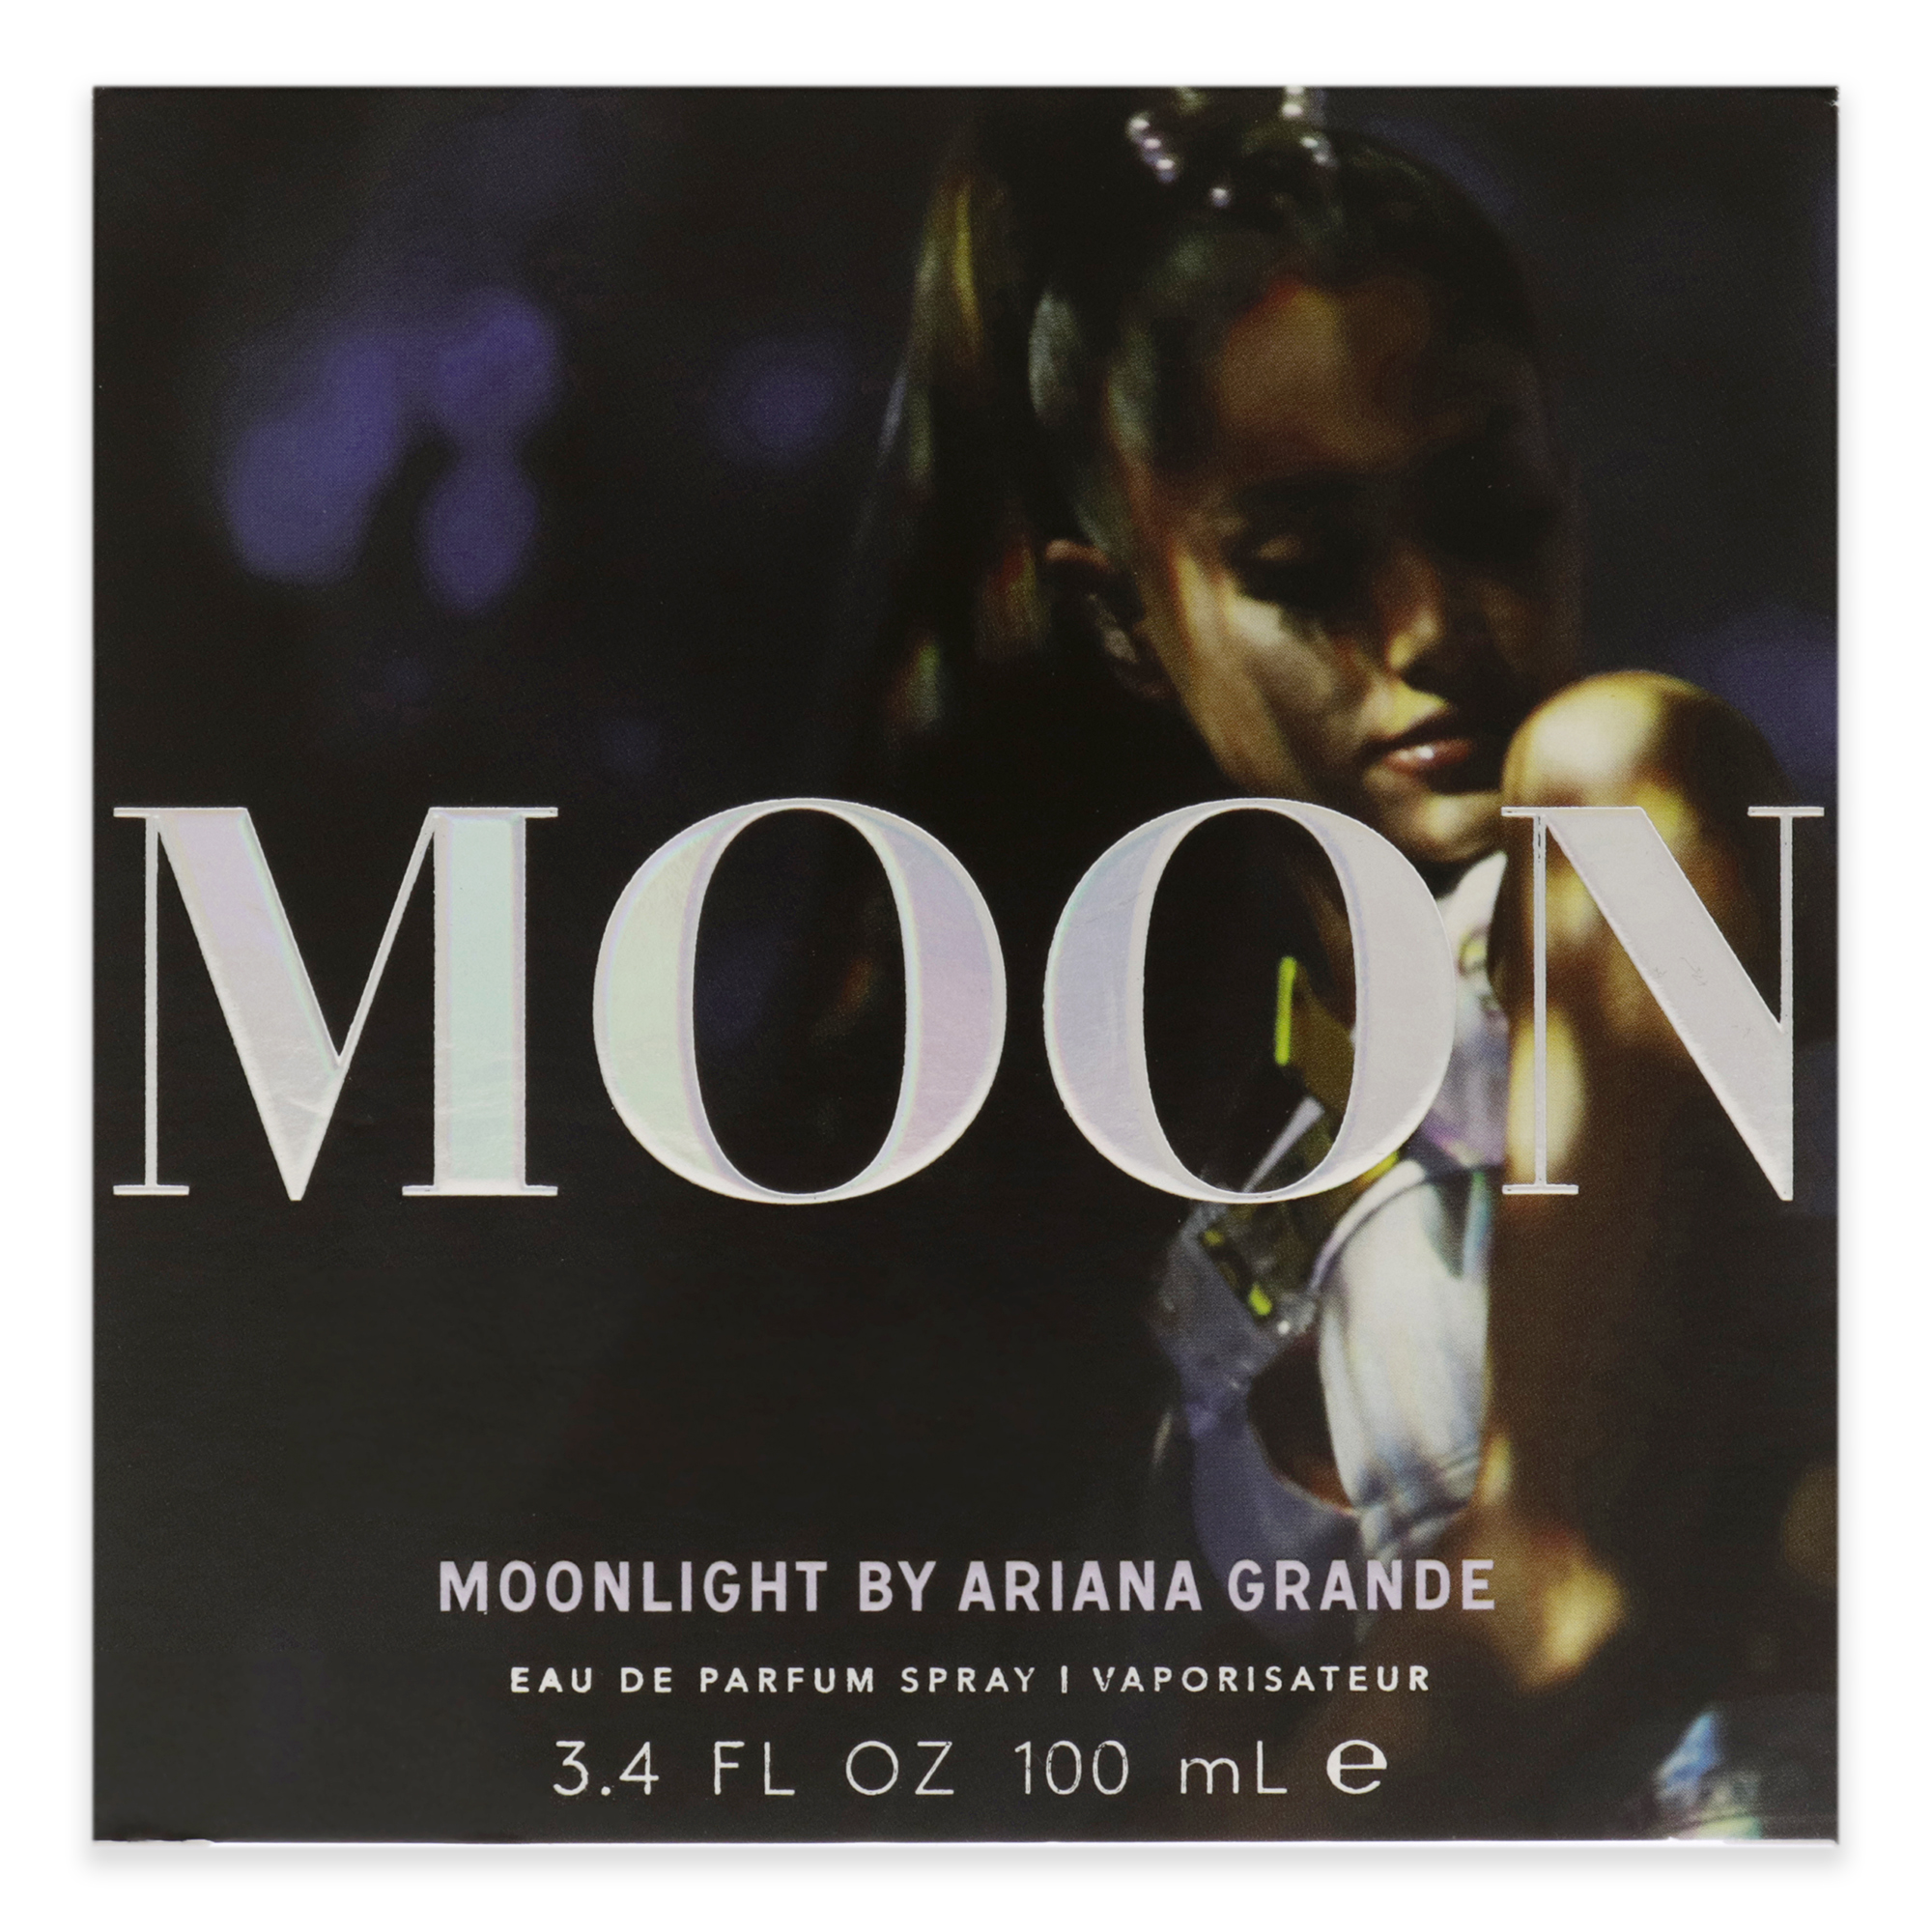 Ariana Grande Moonlight by Ariana Grande Eau De Parfum Spray 3.4 oz for Women - image 5 of 6